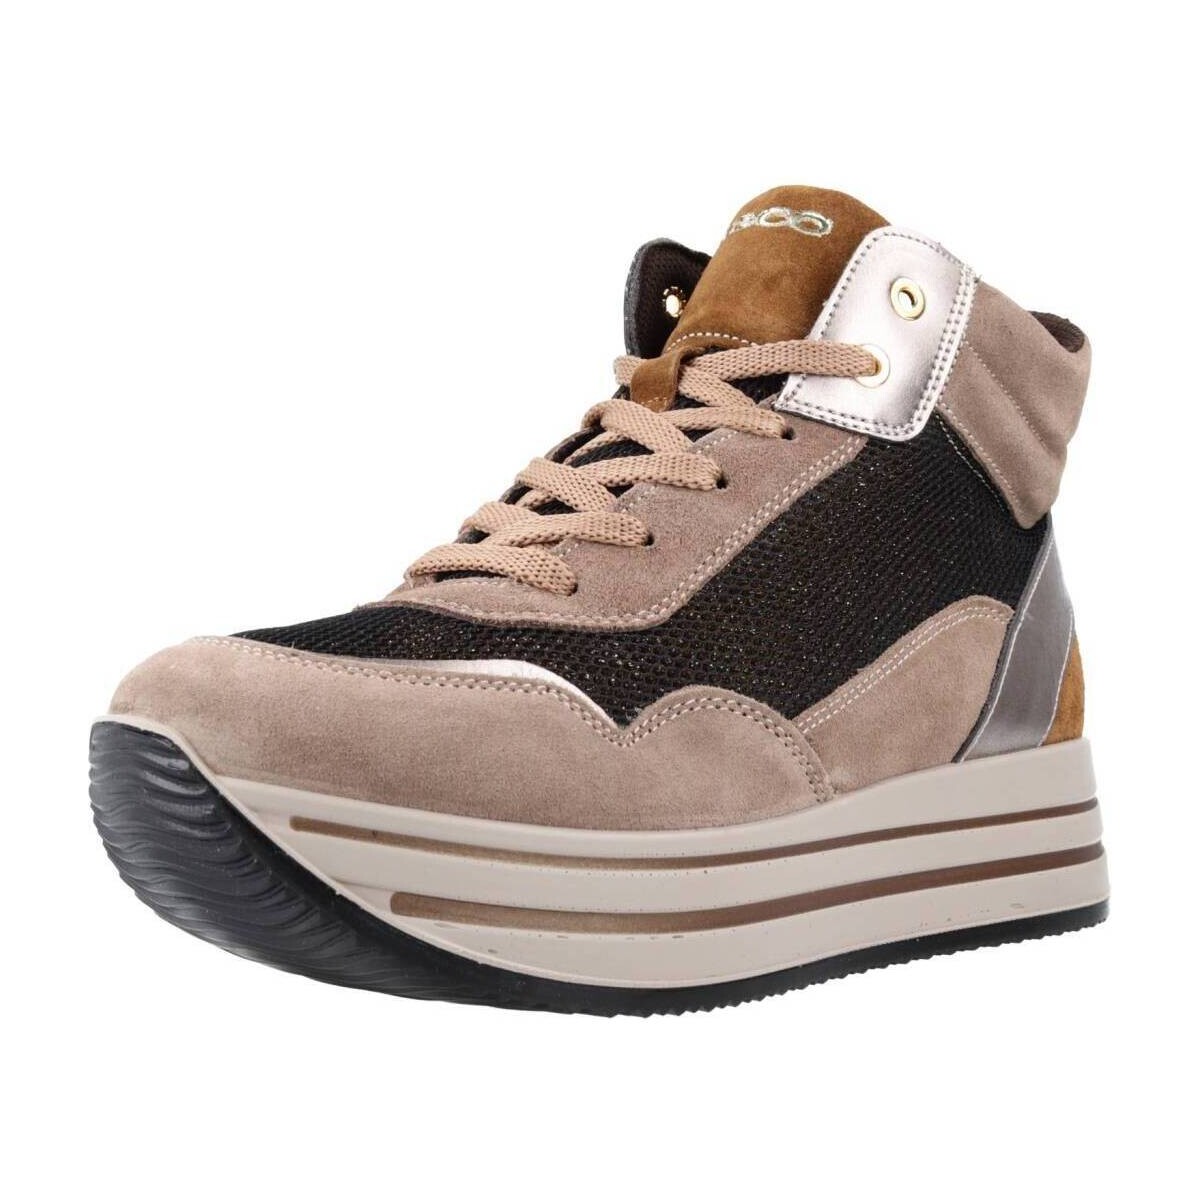 Παπούτσια Γυναίκα Sneakers IgI&CO 4674511IG Brown